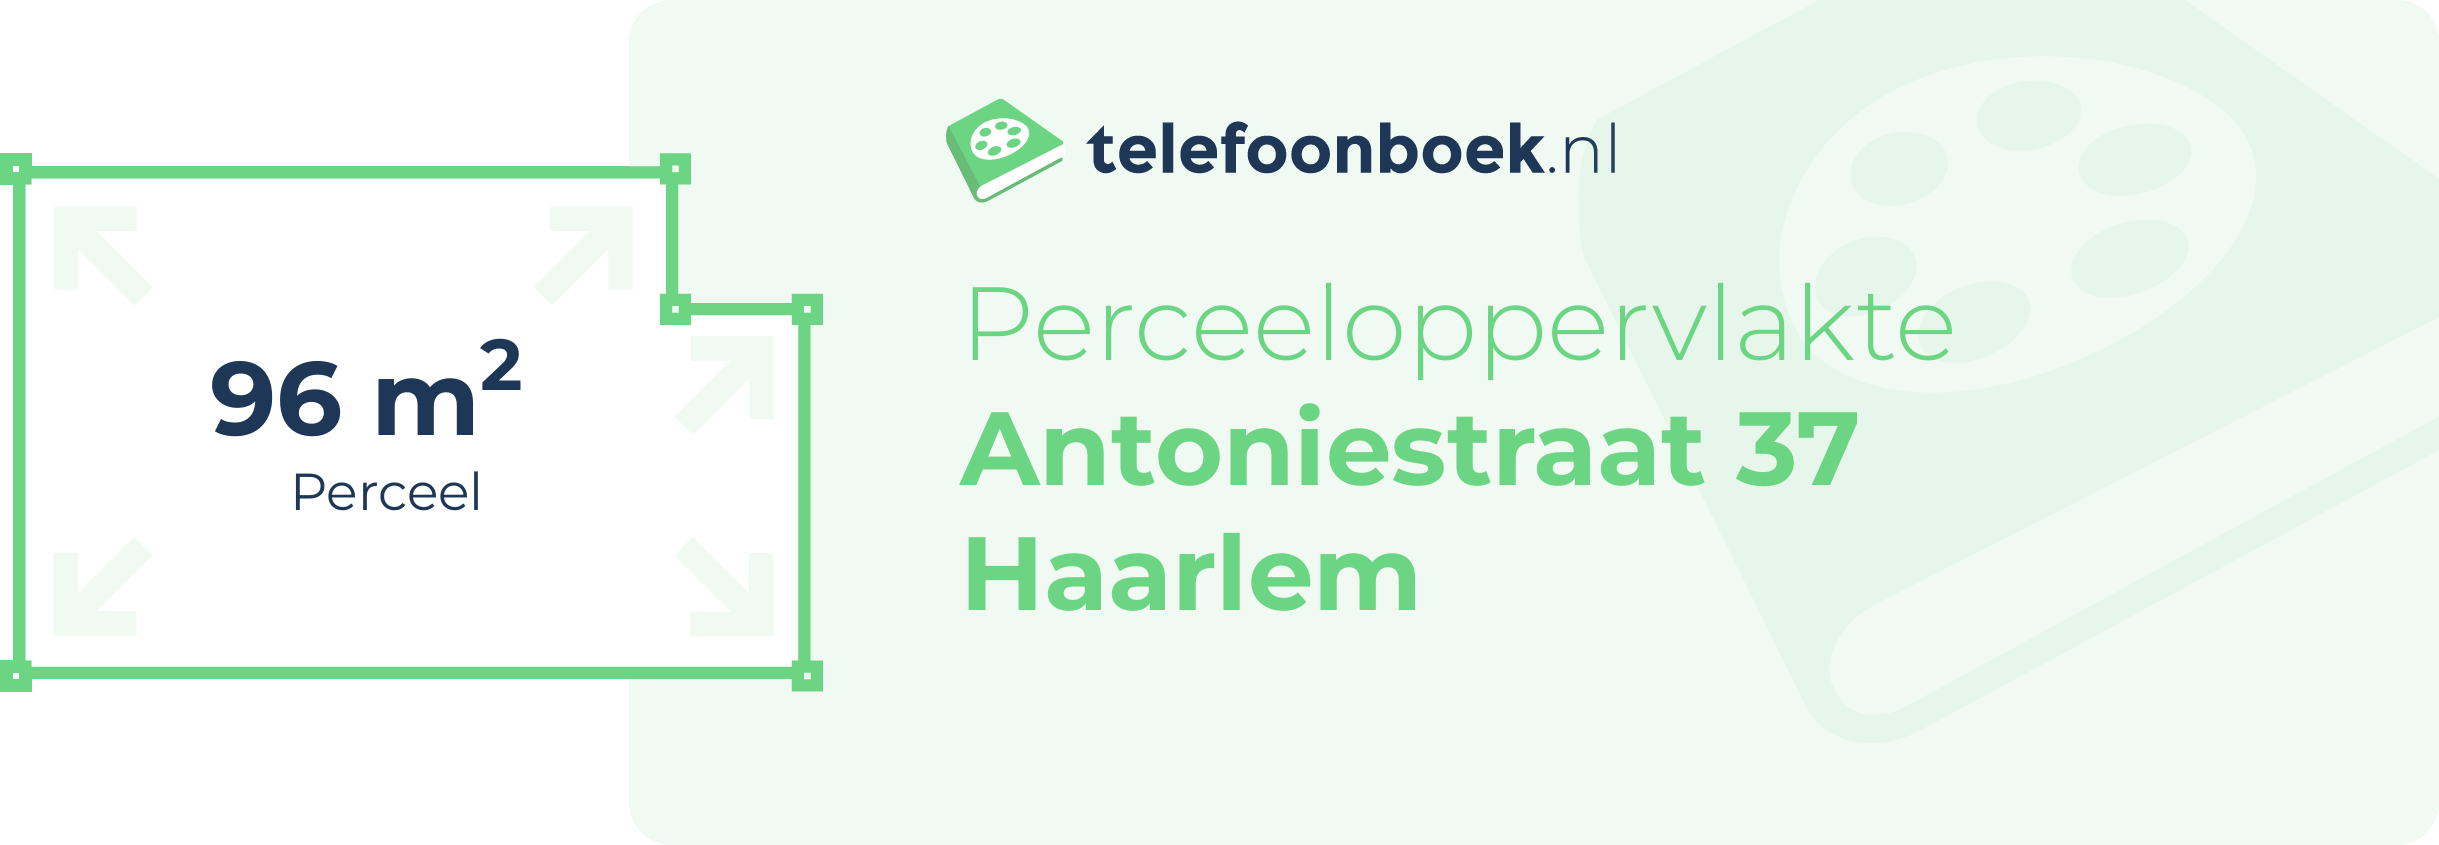 Perceeloppervlakte Antoniestraat 37 Haarlem